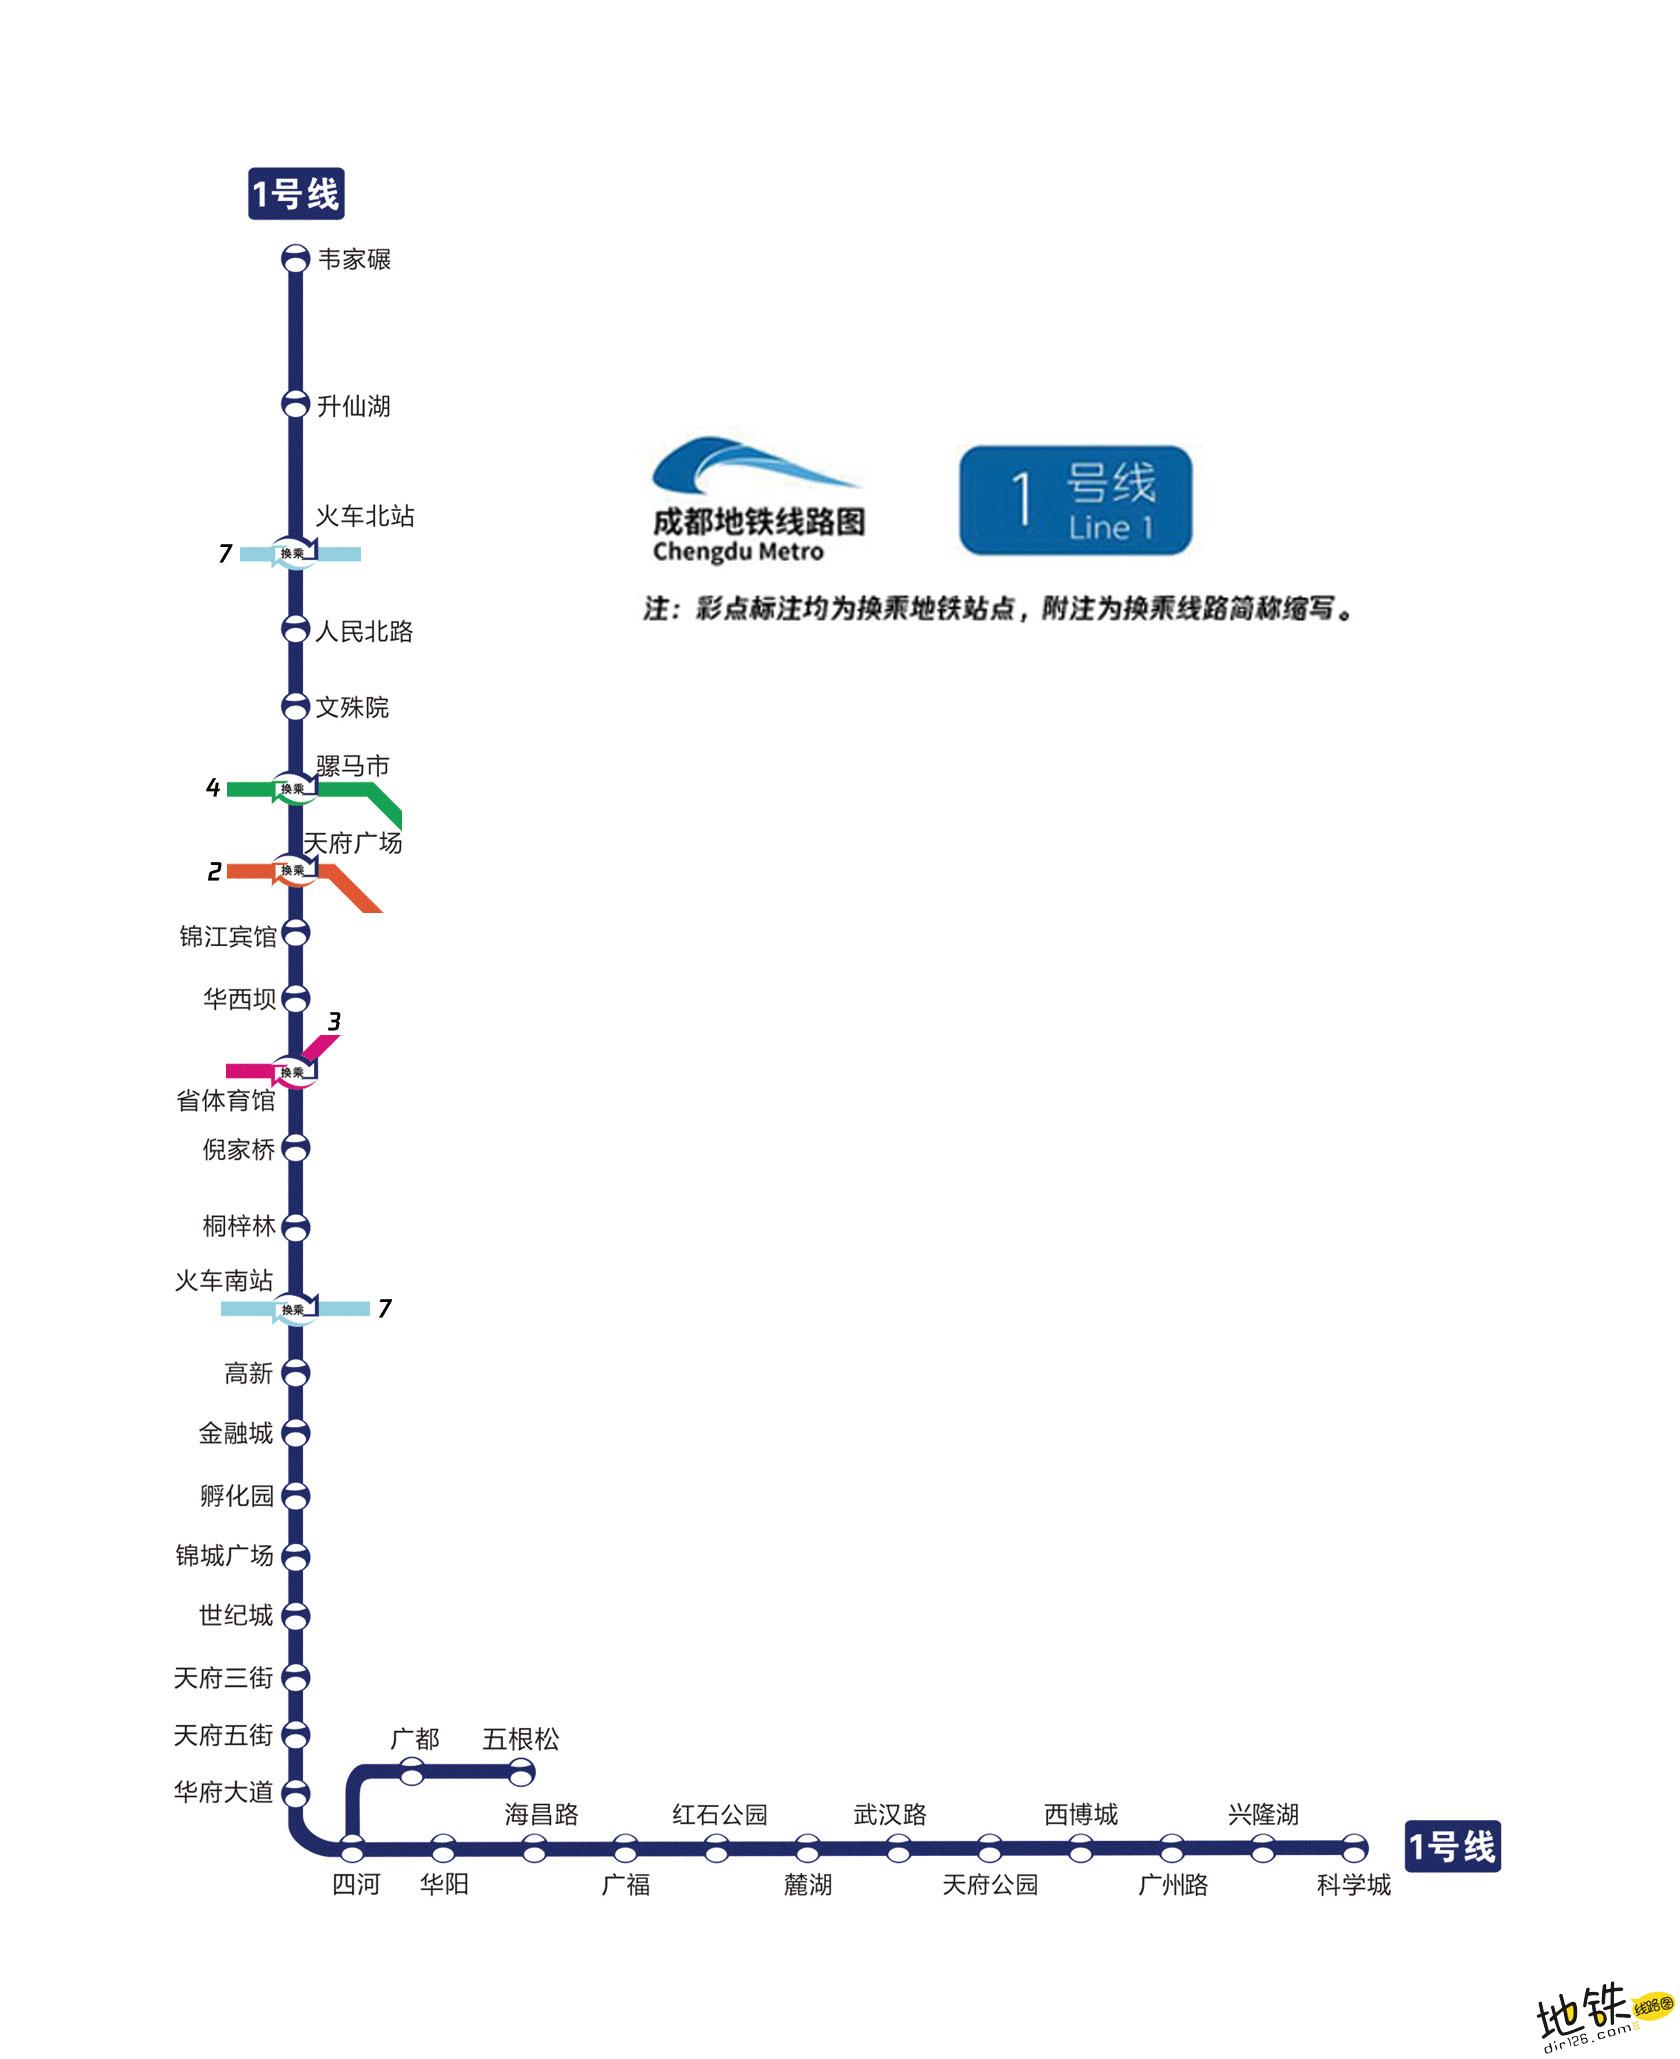 成都轨道交通（2024~2029）第五期及市域铁路规划示意图（3.... - 成都地铁 地铁e族